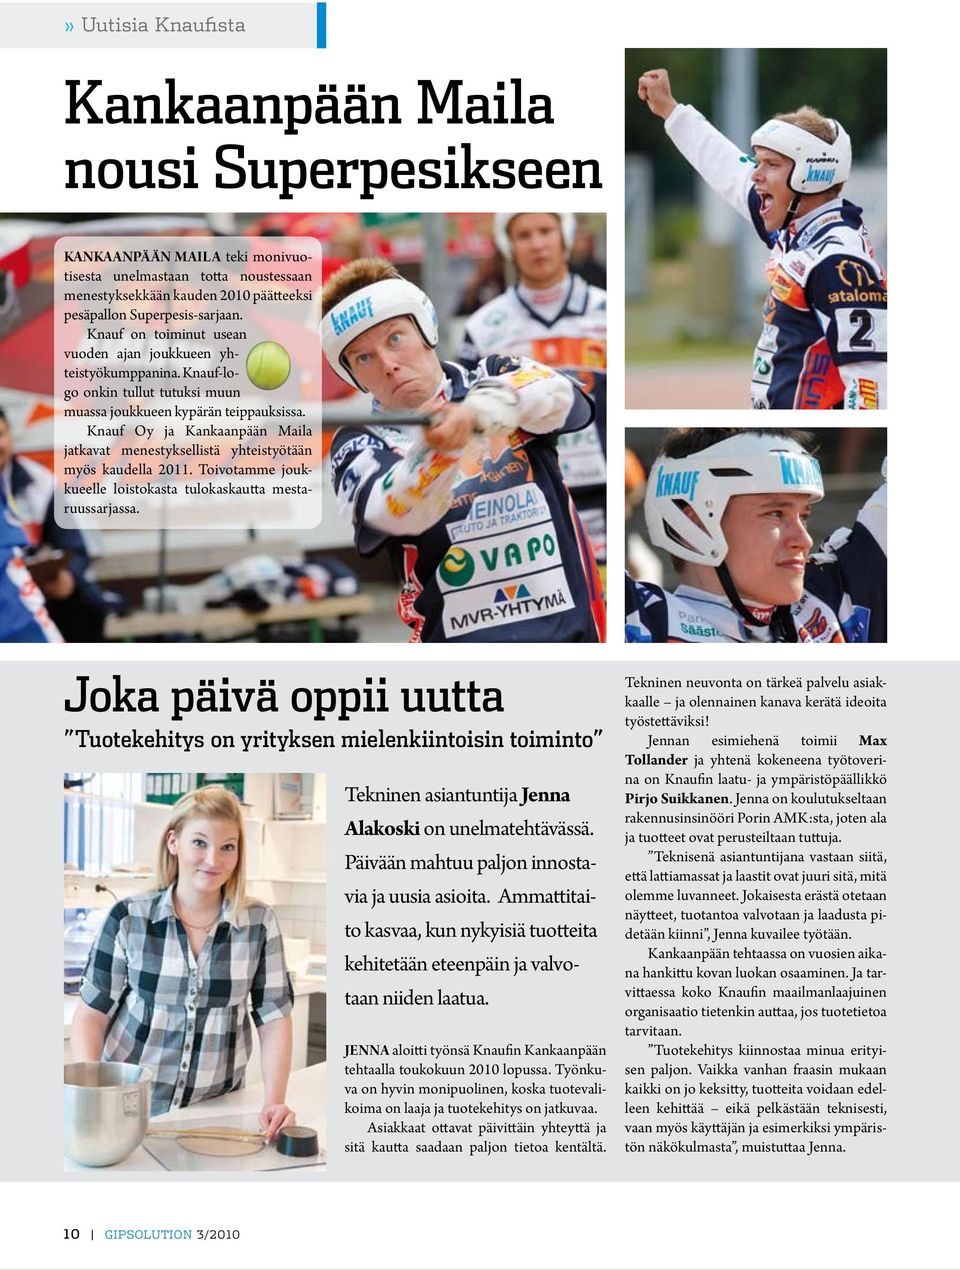 Knauf Oy ja Kankaanpään Maila jatkavat menestyksellistä yhteistyötään myös kaudella 2011. Toivotamme joukkueelle loistokasta tulokaskautta mestaruussarjassa.